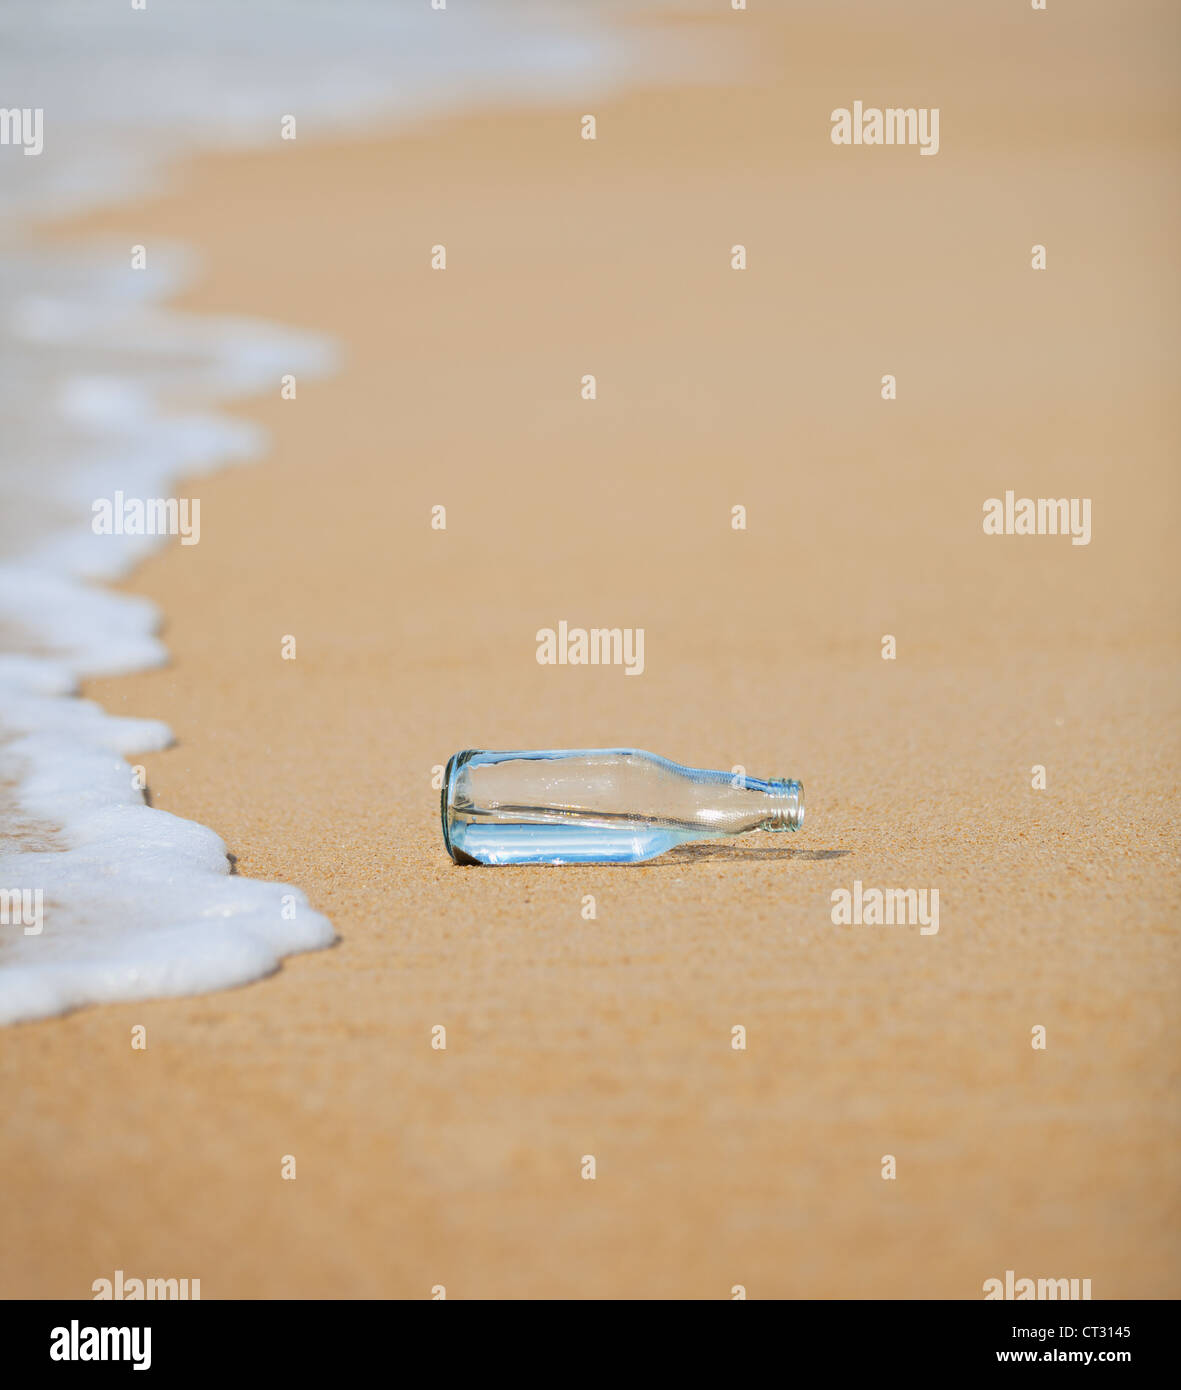 Eine leere Flasche am Strand Stockfoto